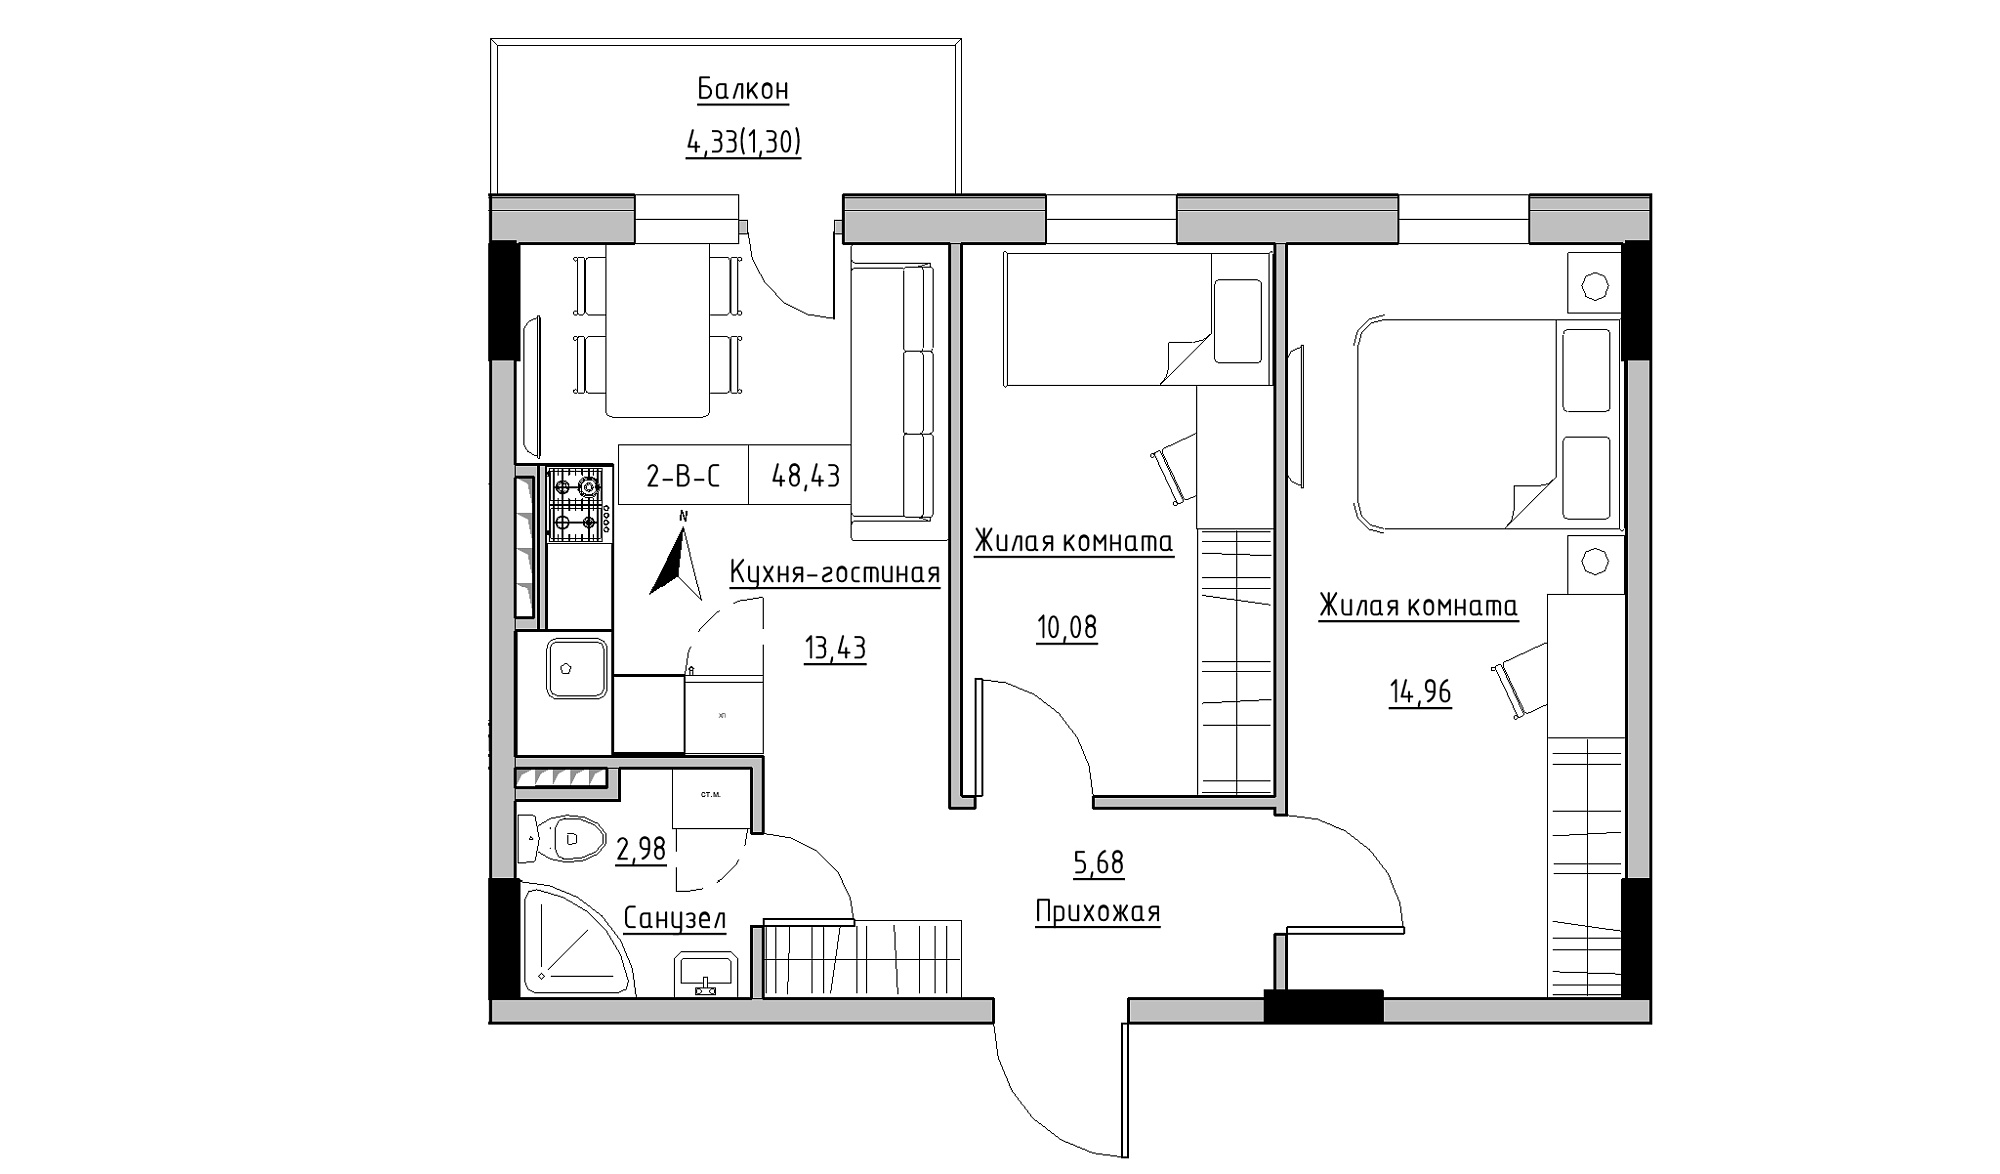 Планування 2-к квартира площею 48.43м2, KS-025-04/0009.